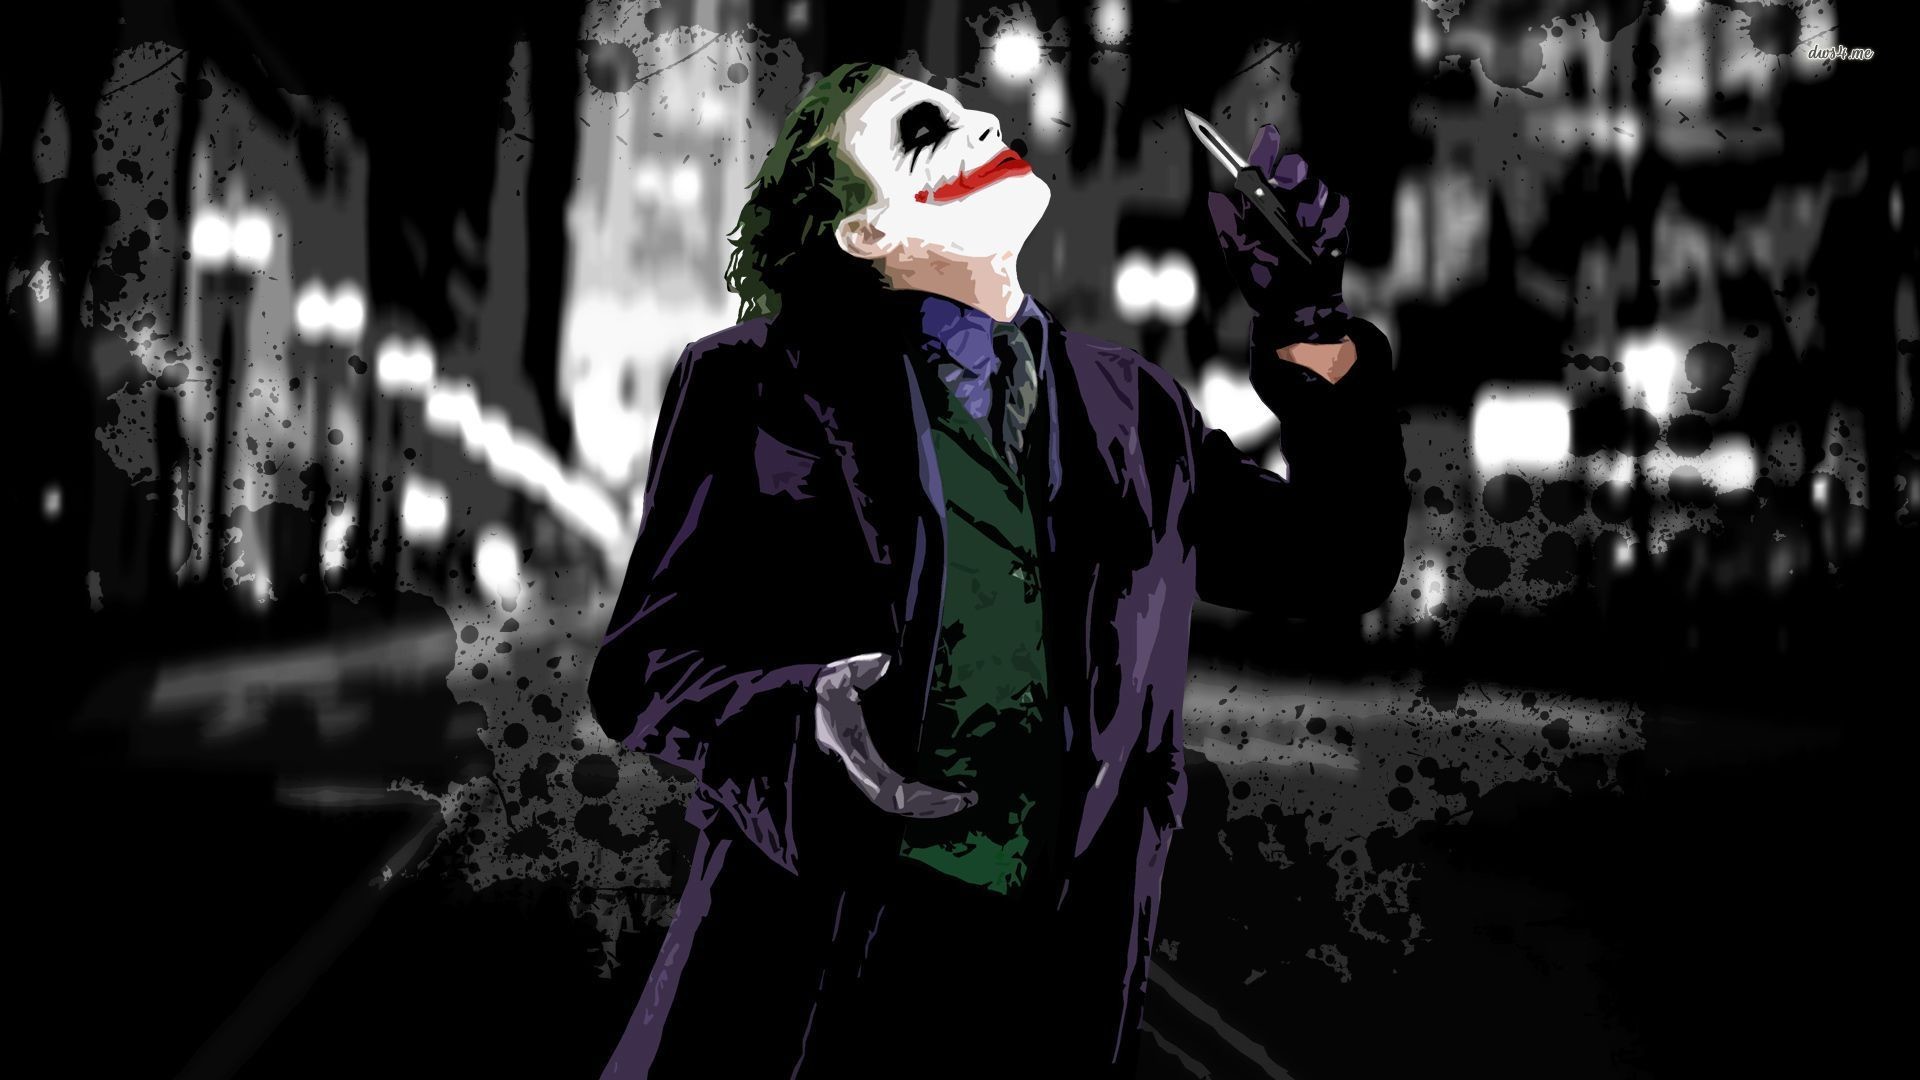 1920x1080 ... The Dark Knight - Joker wallpaper  ...